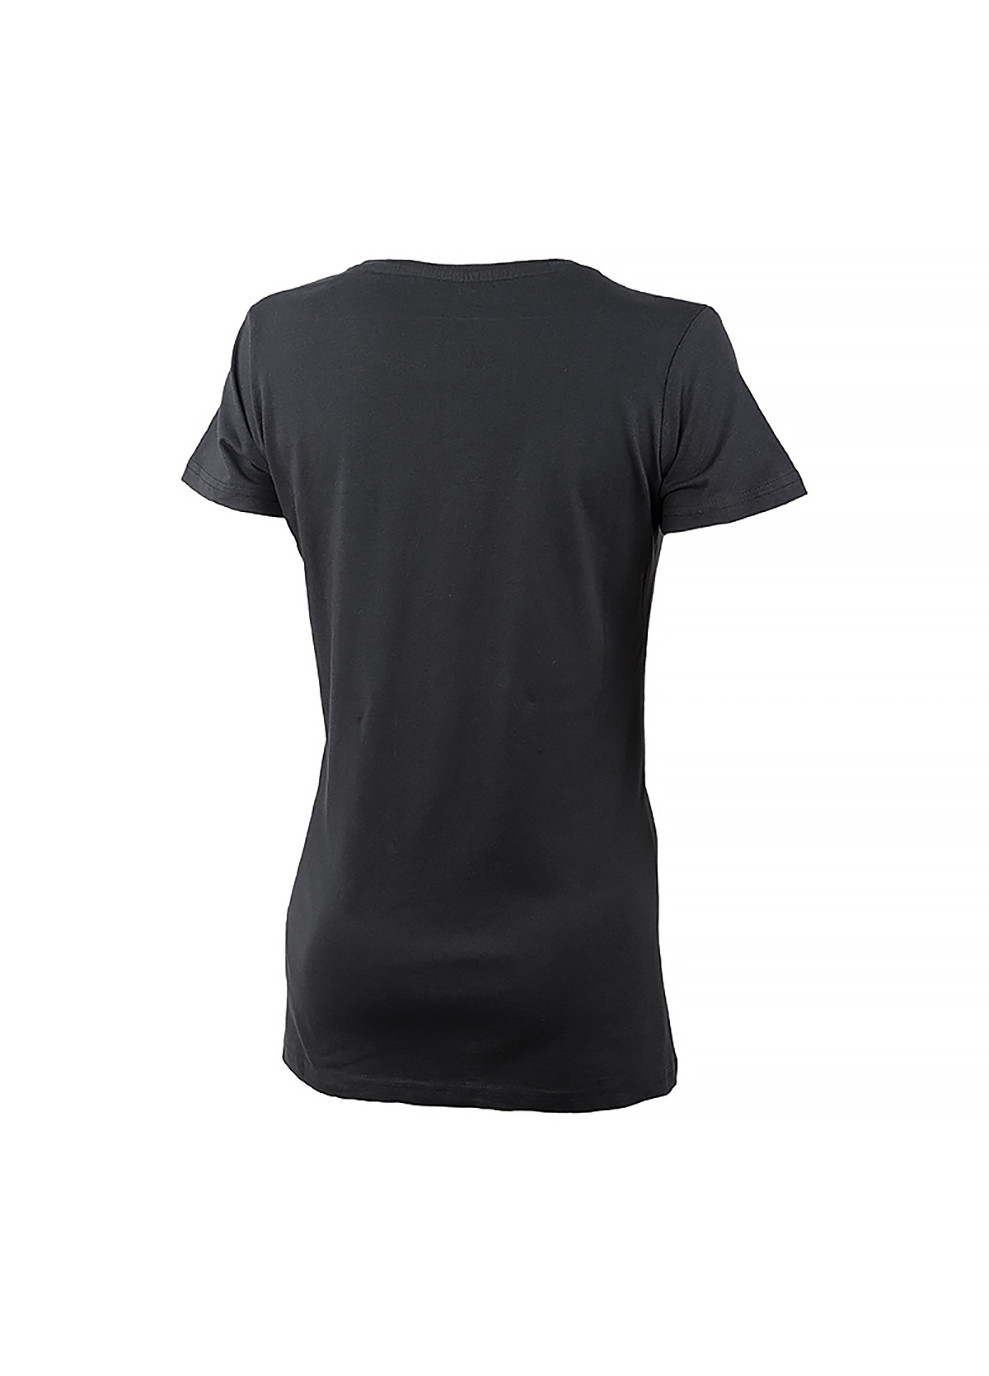 Чорна демісезон жіноча футболка t-shirt botanical print j22w чорний Jeep